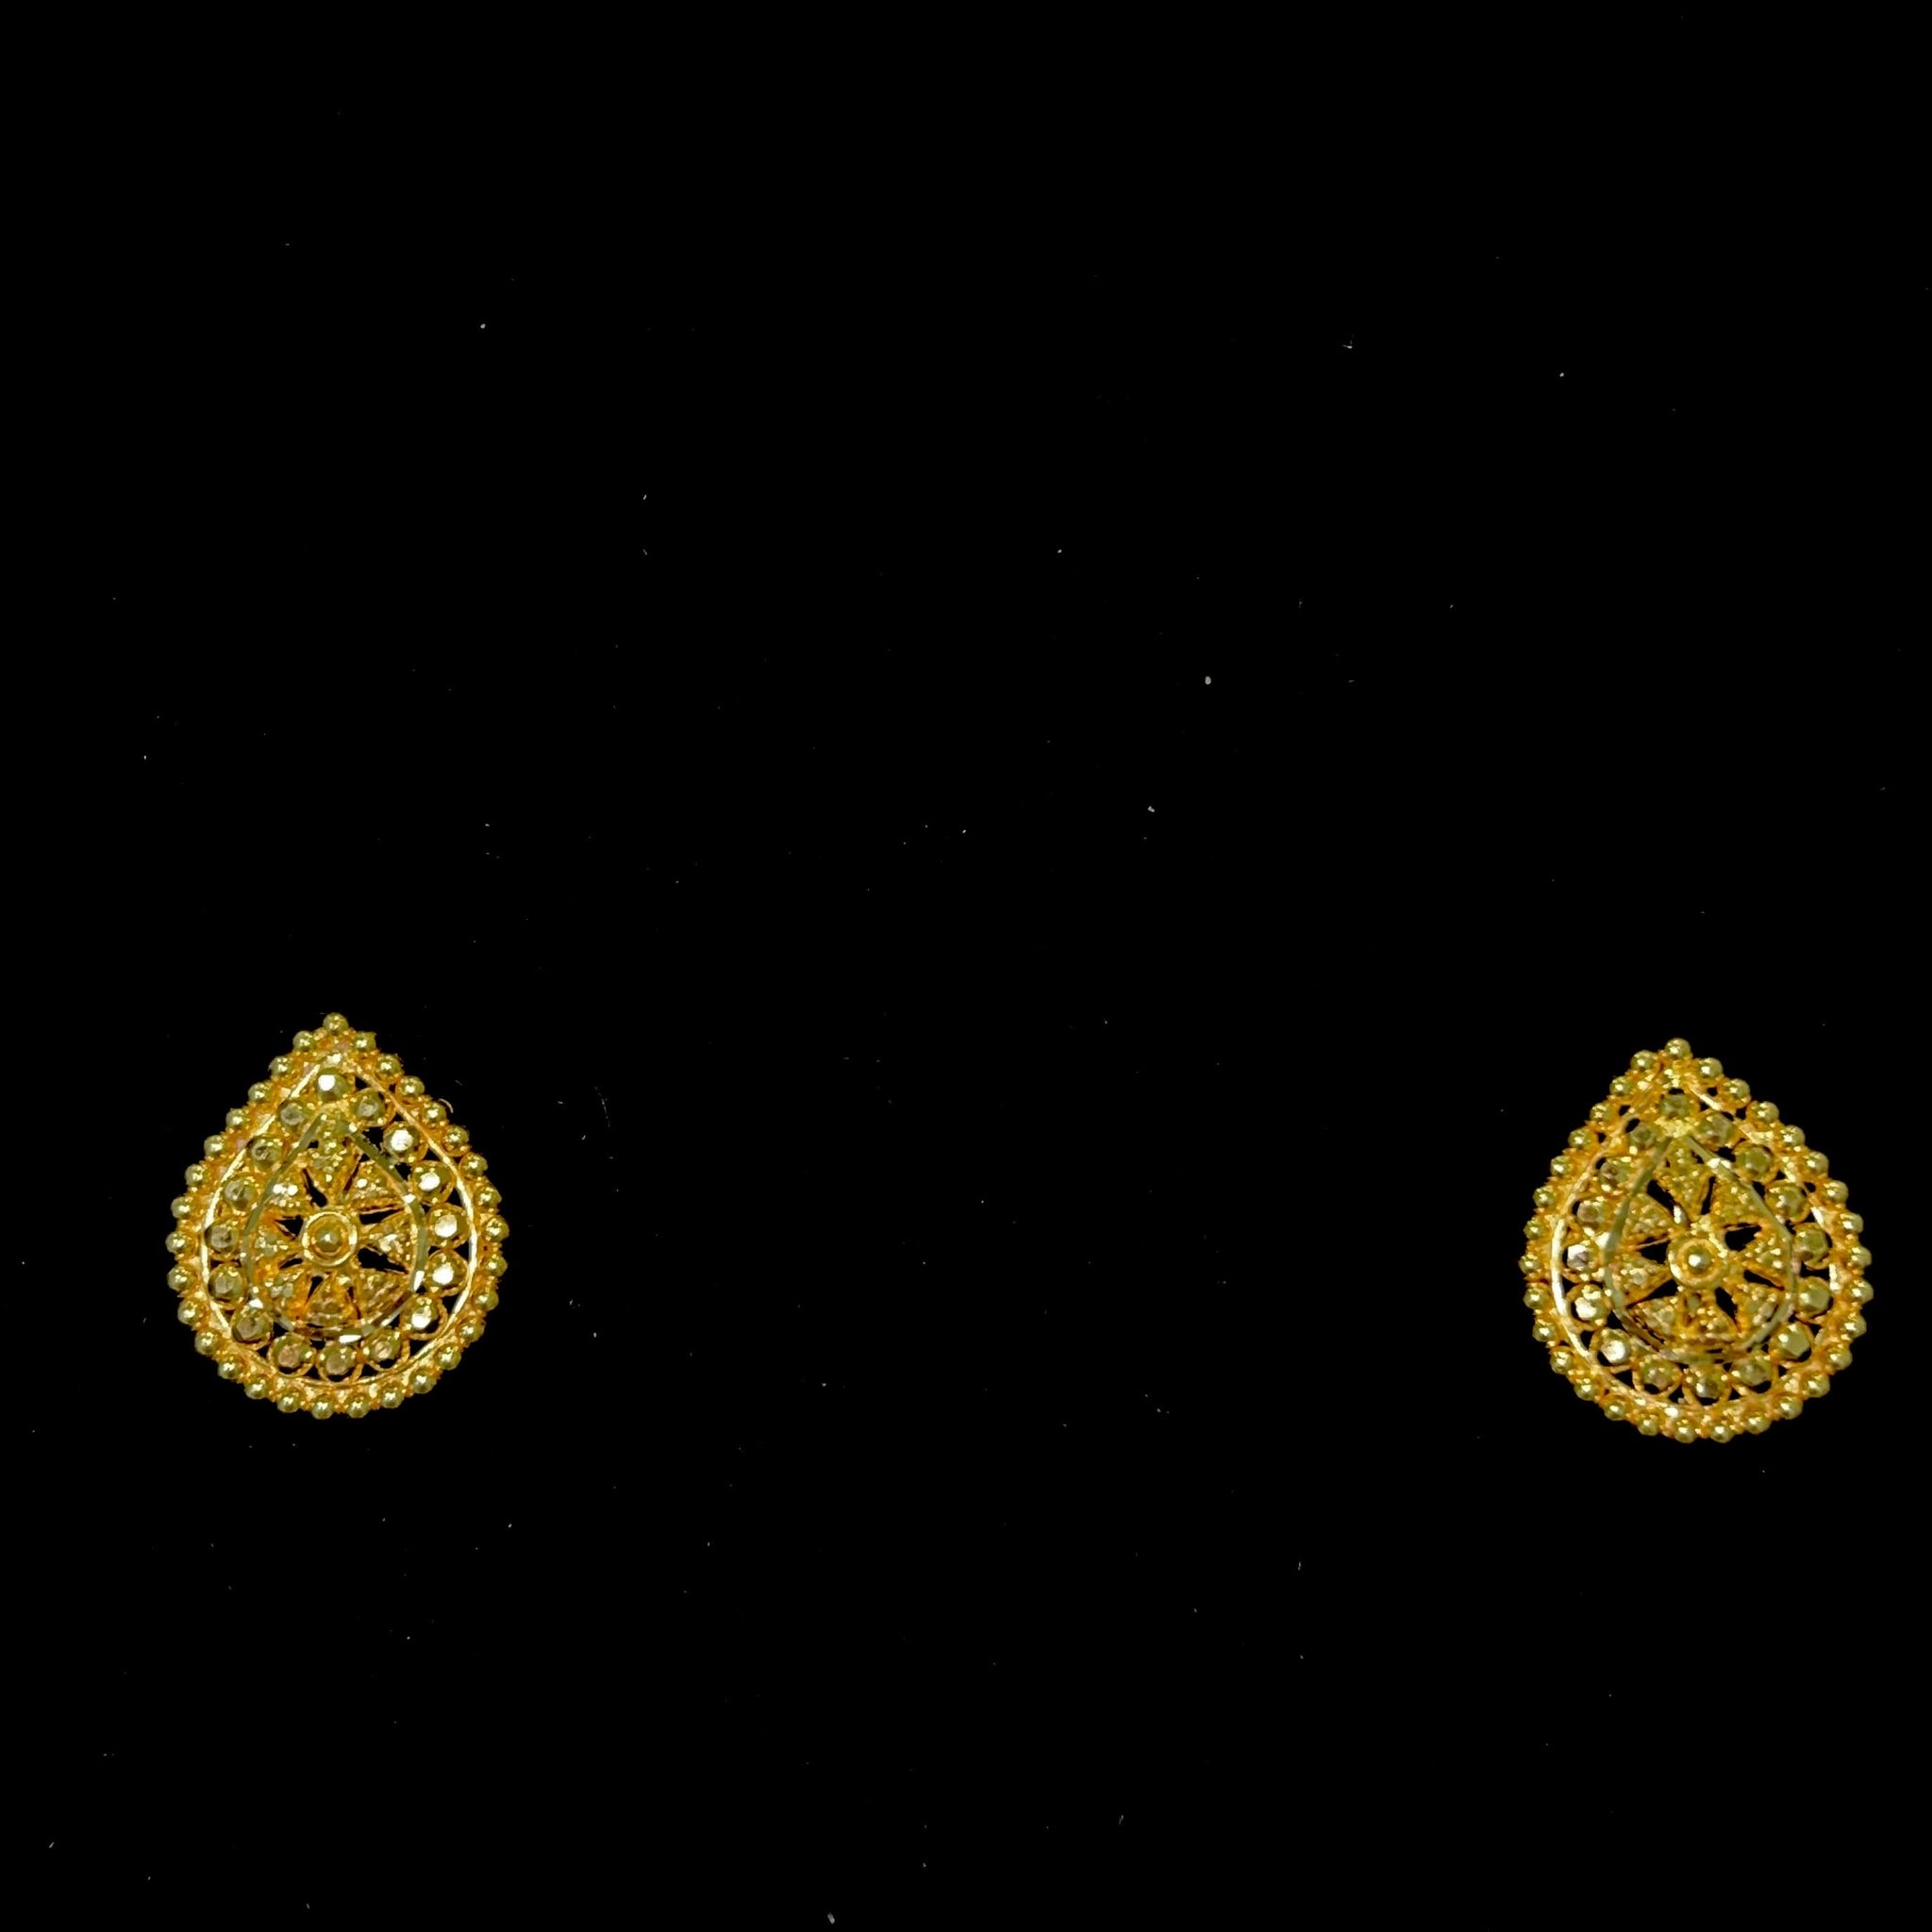 3-part Ladies Set - Chain + Pendant + Earrings - 22 Carat Gold - 45cm/1,5mm - 361